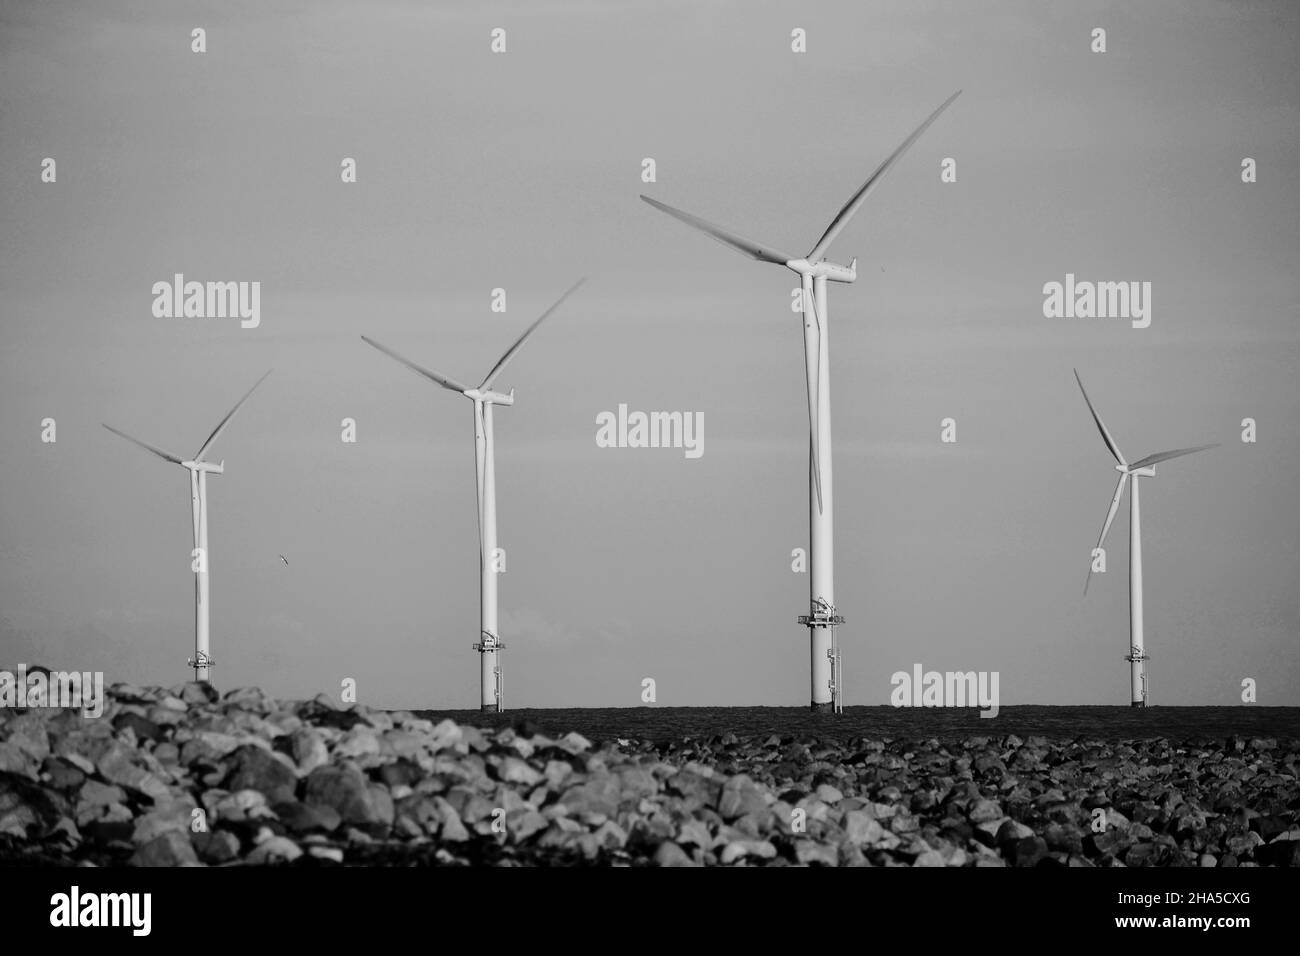 Image en noir et blanc à éclairage naturel du parc éolien offshore Teesside exploité par EDF renouvelables.Photo de South Gare, Redcar, North Yorkshire, Royaume-Uni Banque D'Images